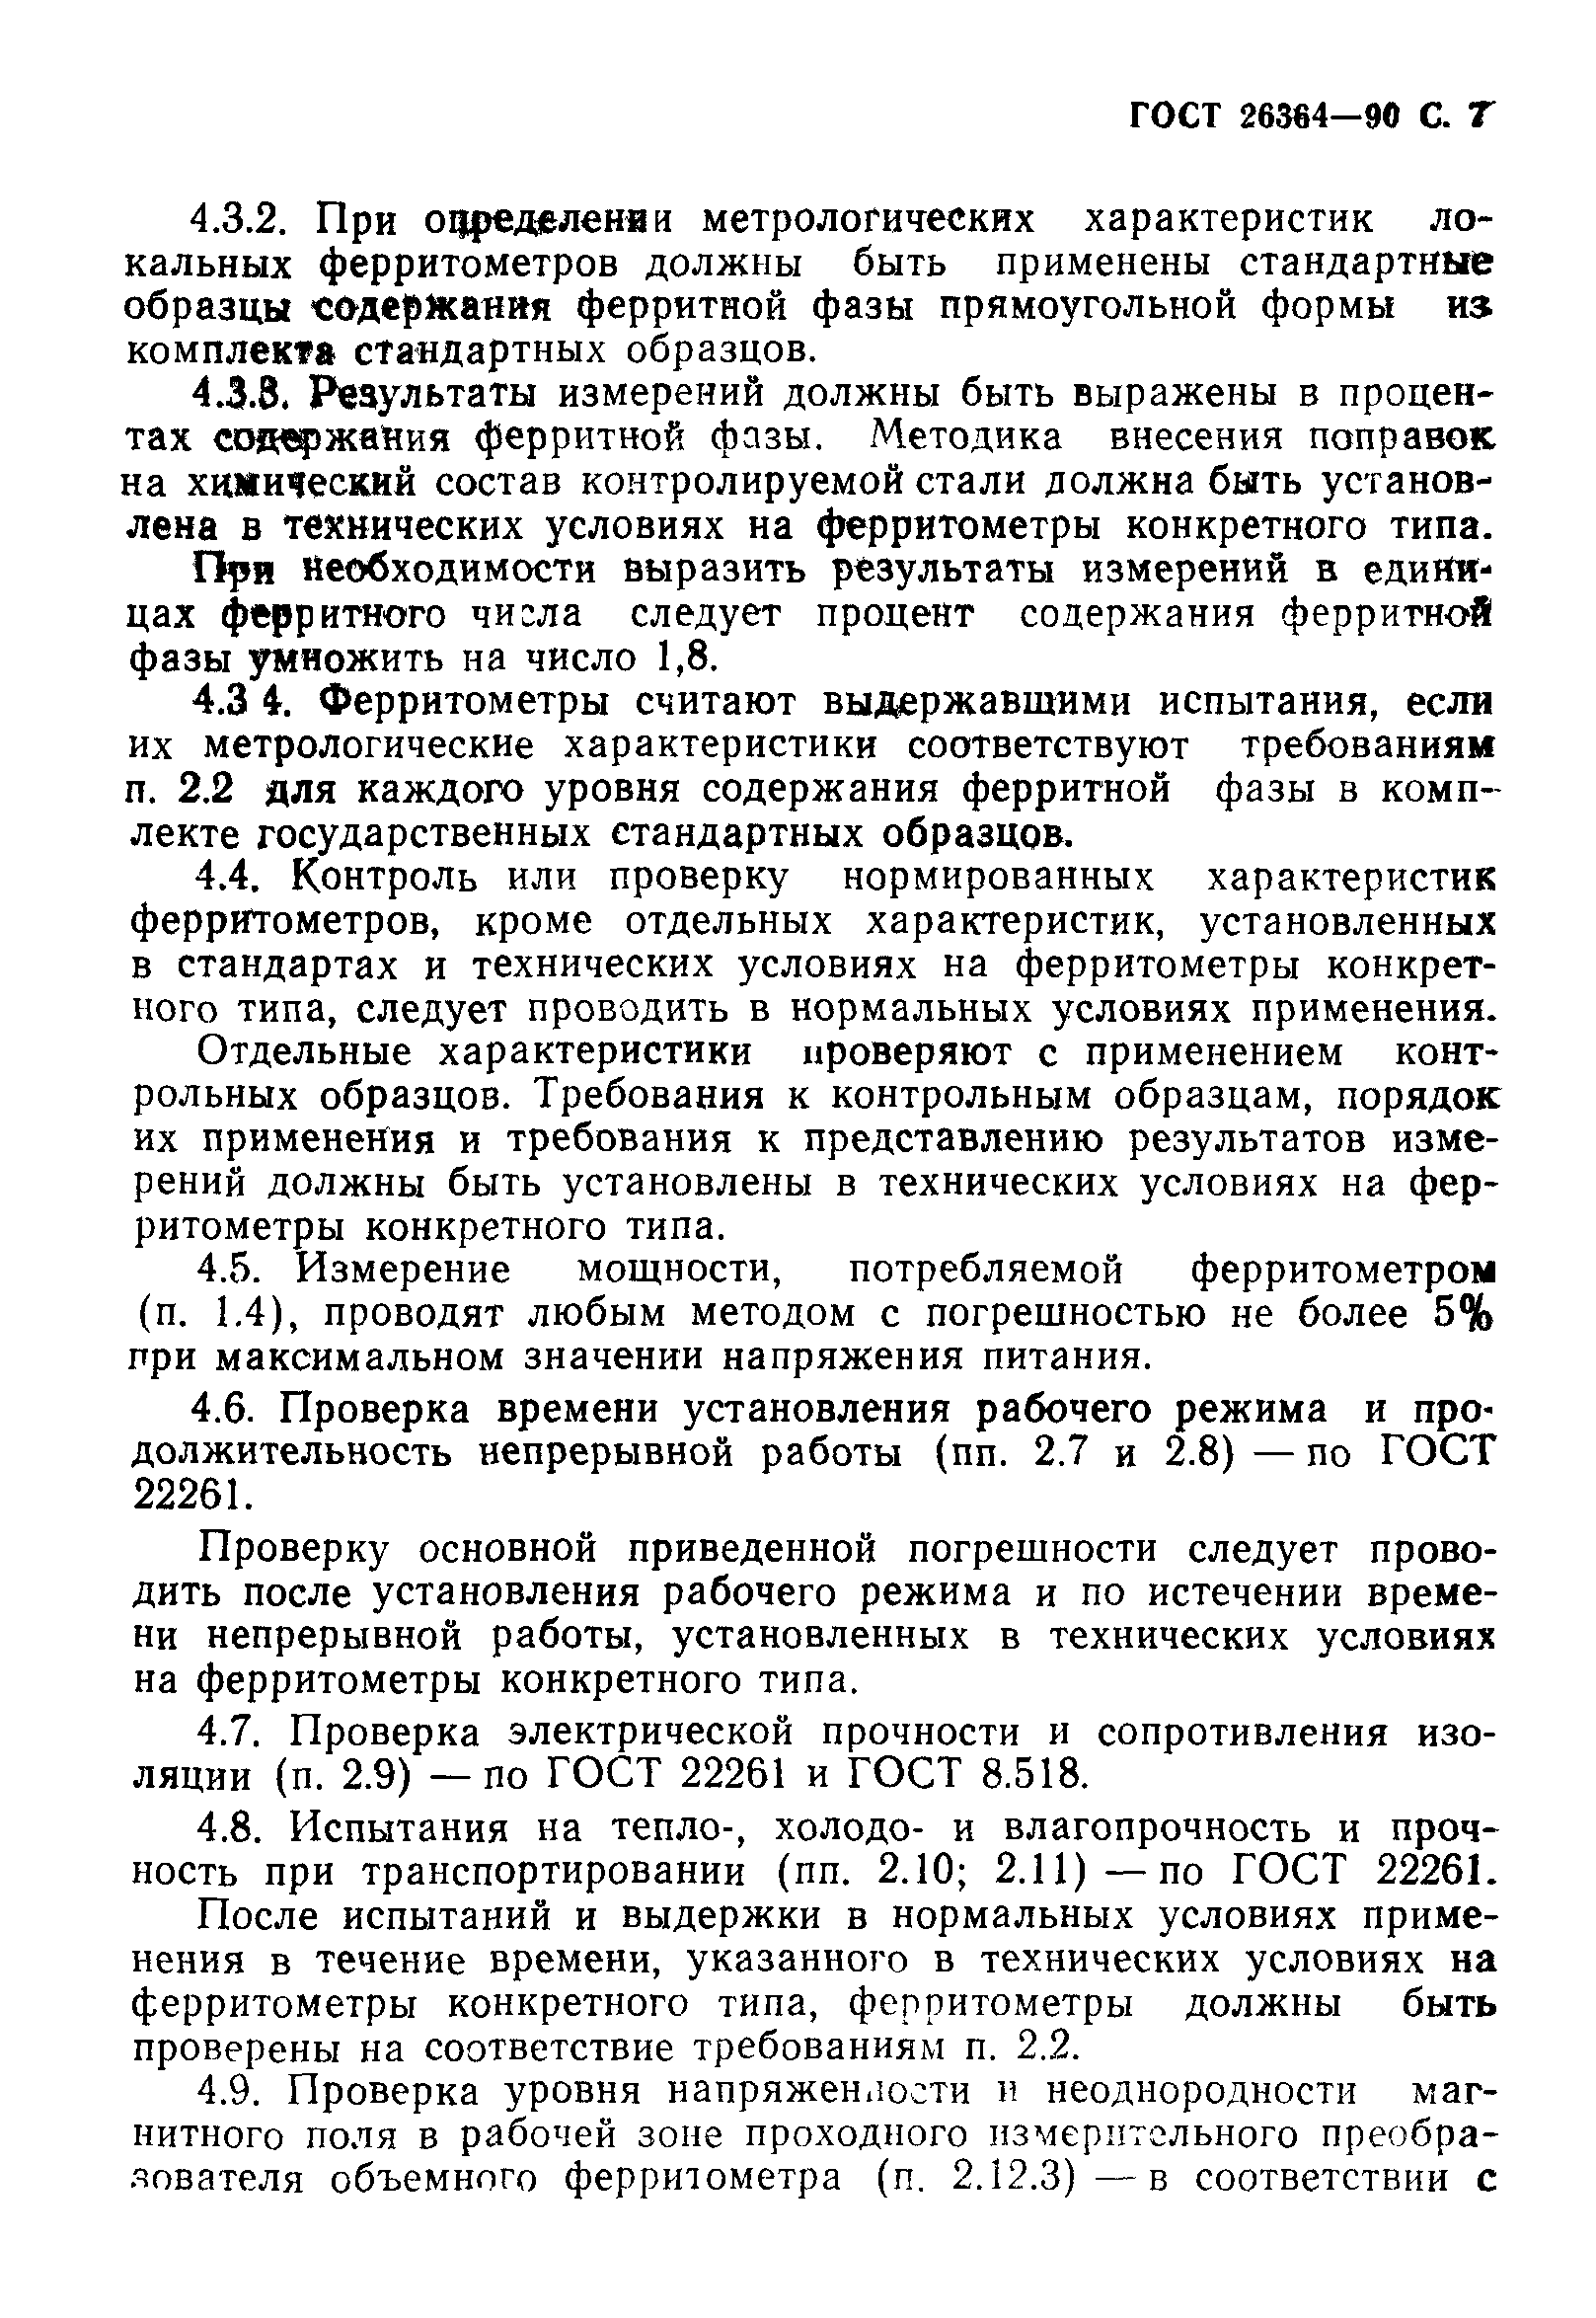 Нержавеющие хромистые (ферритные и мартенситные) стали. - www.mpoltd.ru